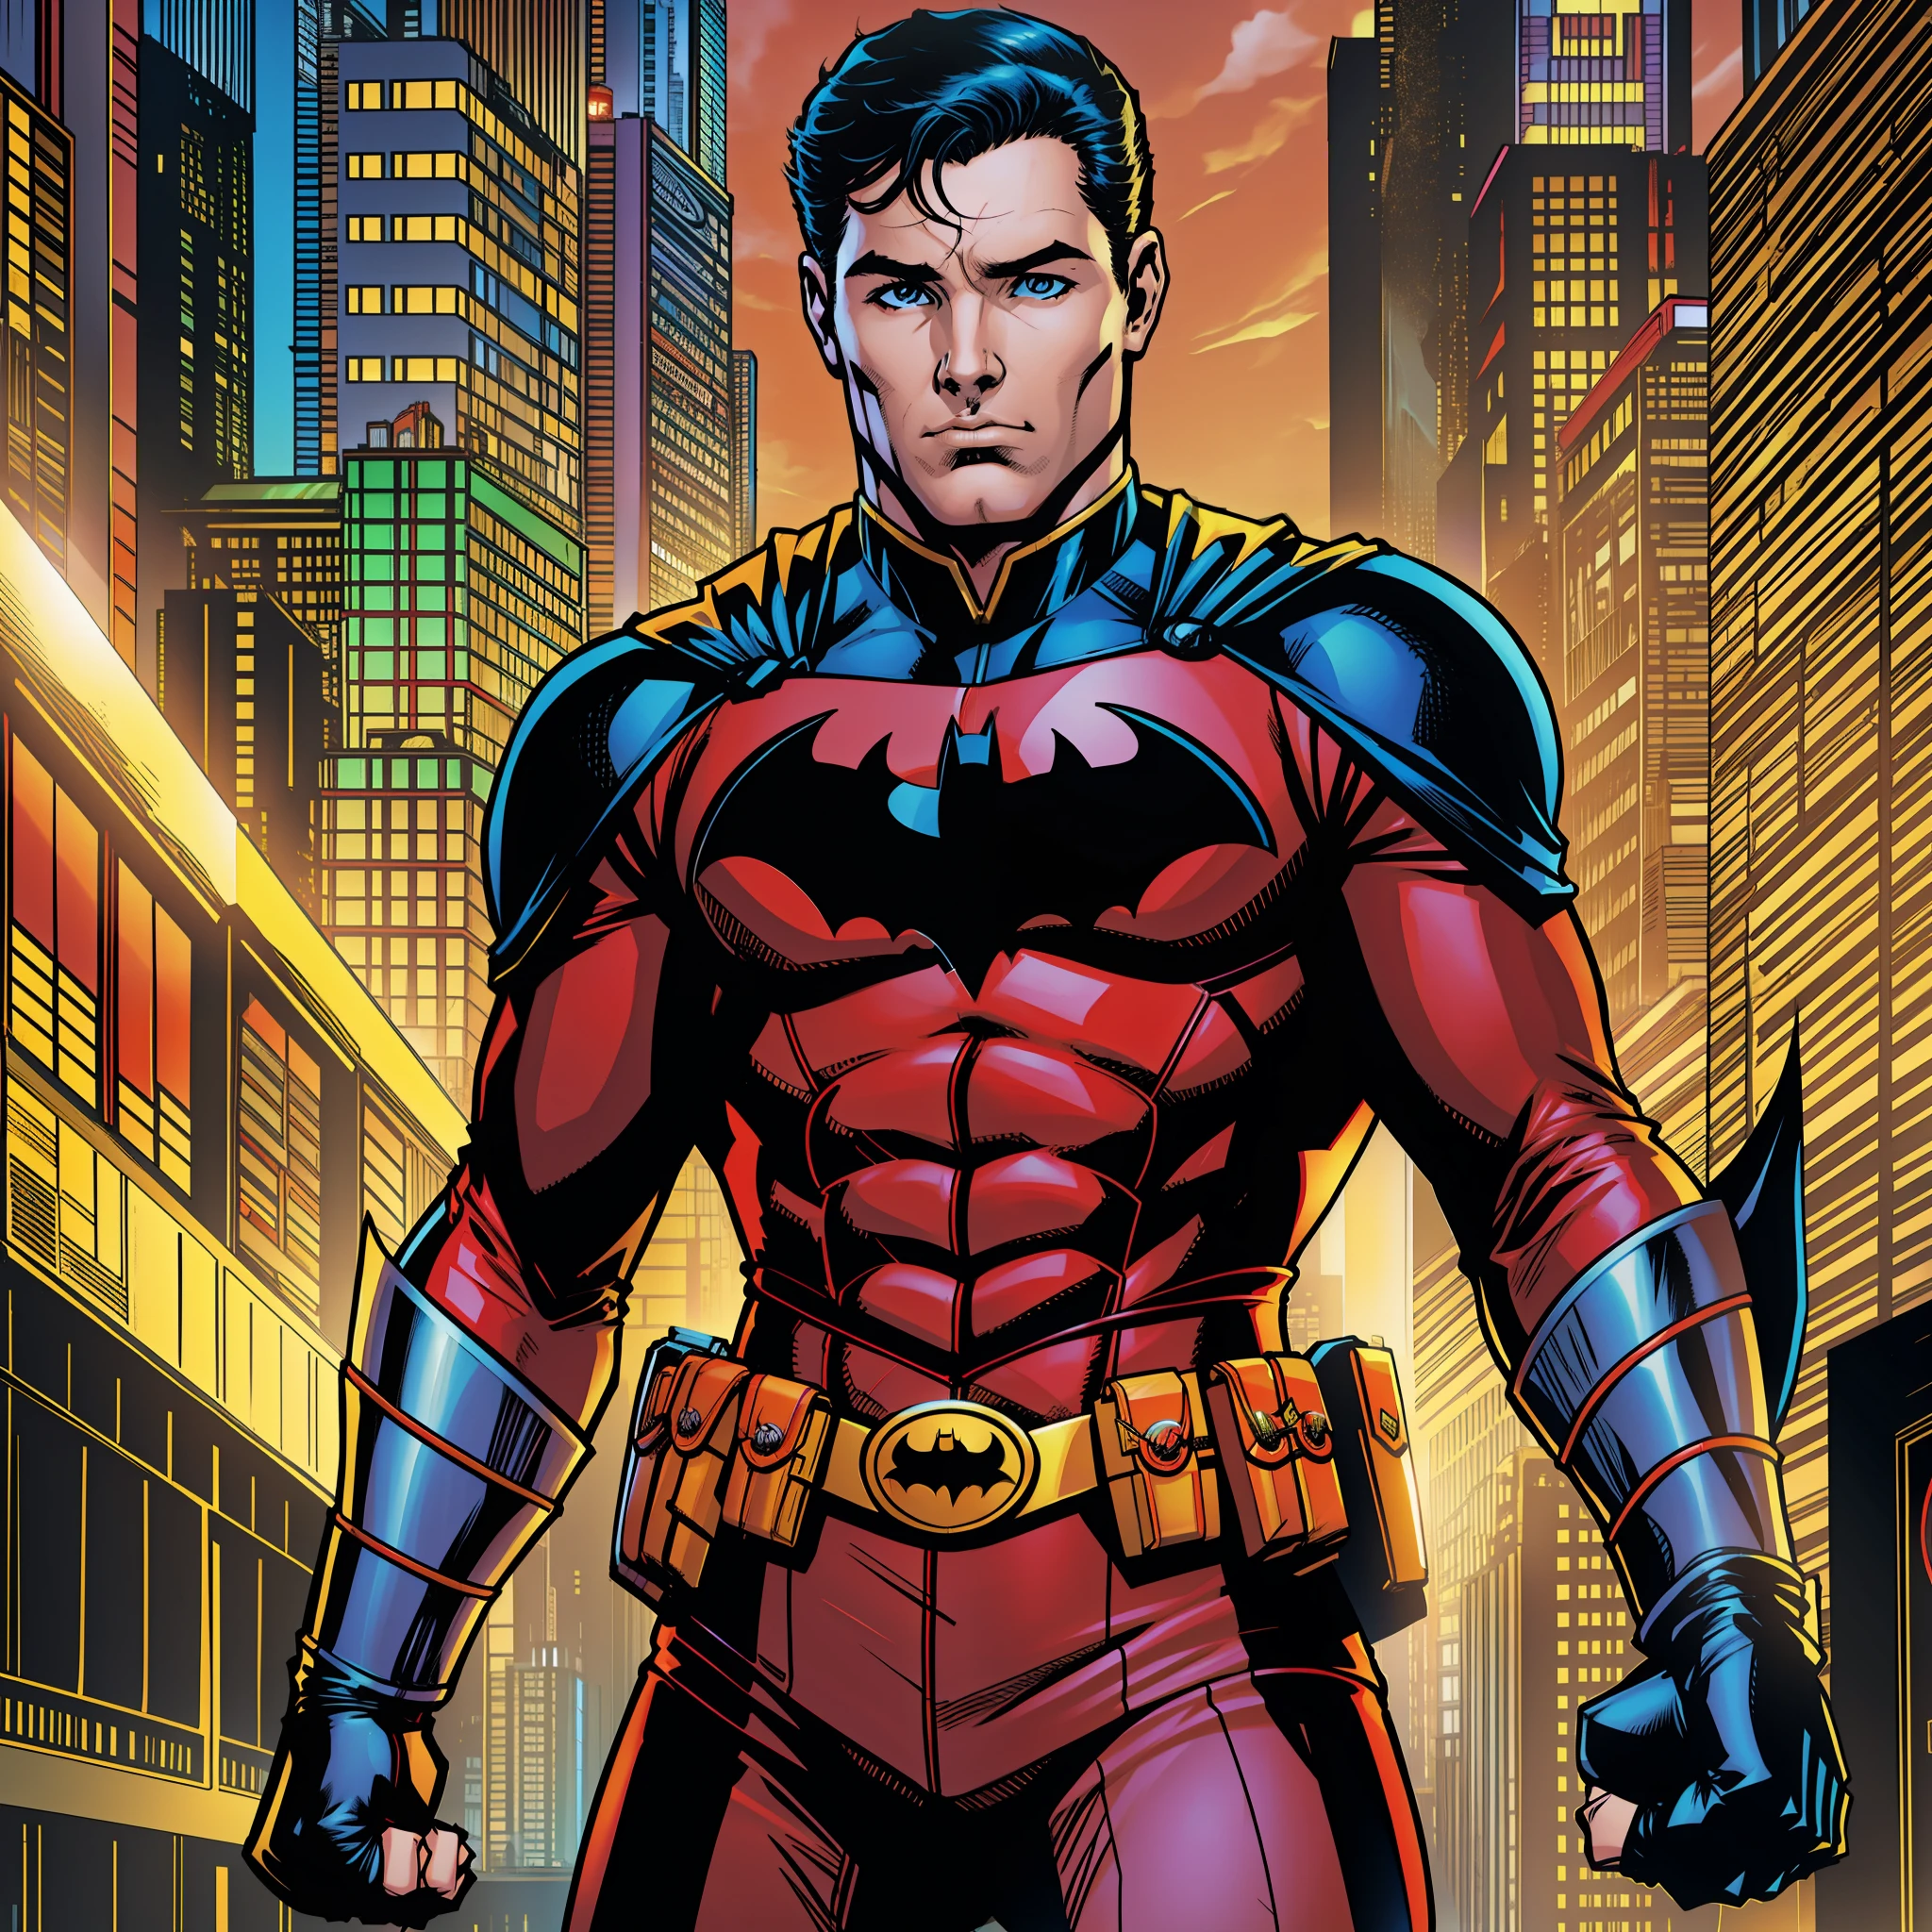 Робин из комиксов DC , Красный боди , Логотип Робина на груди , соло комиксы dc арт стиль , в комиксе о Бэтмене